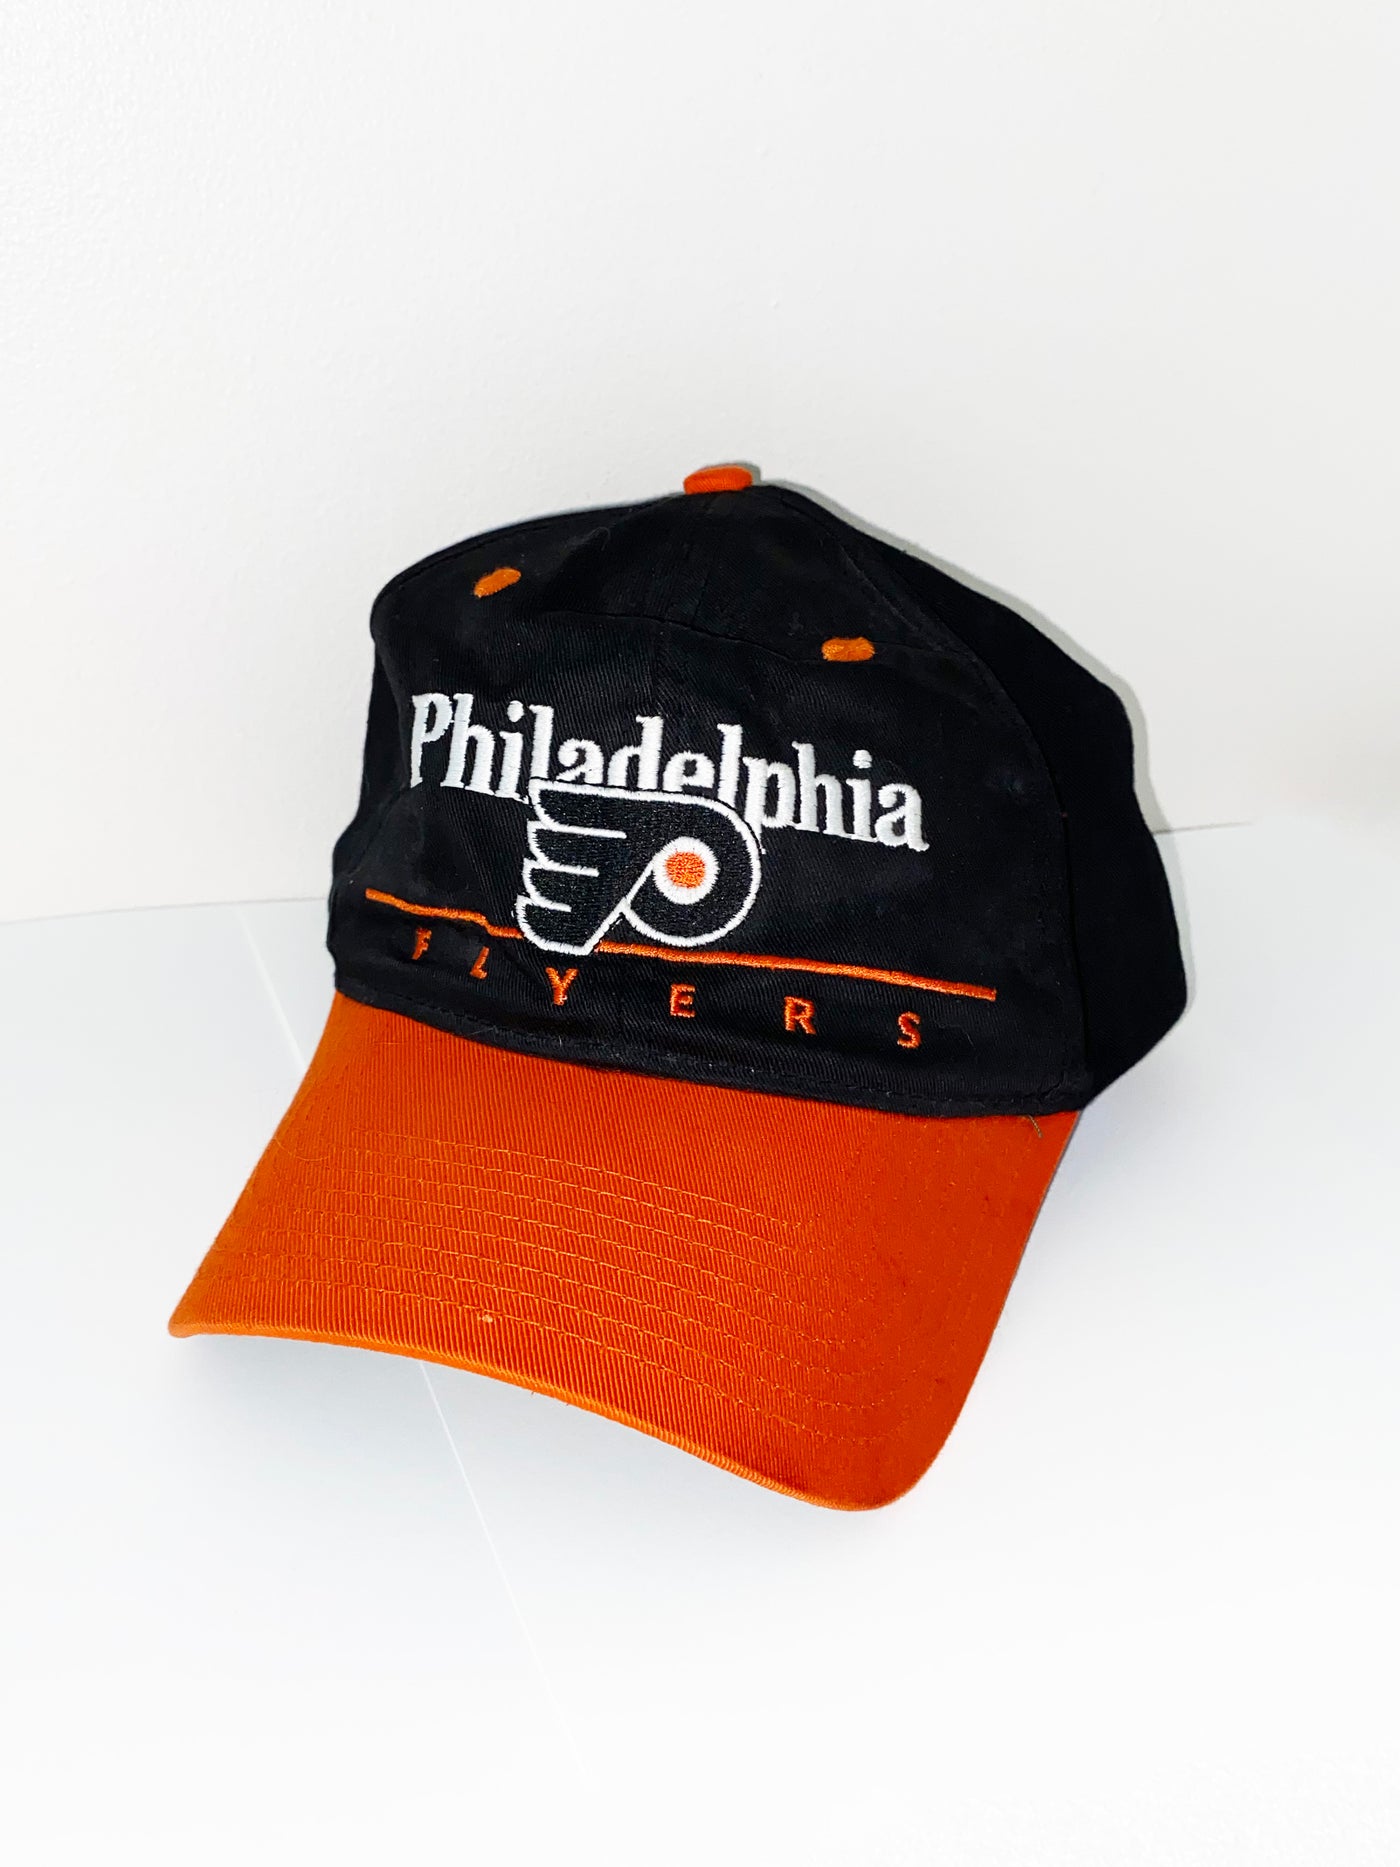 Vintage Philadelphia Flyers Snapback